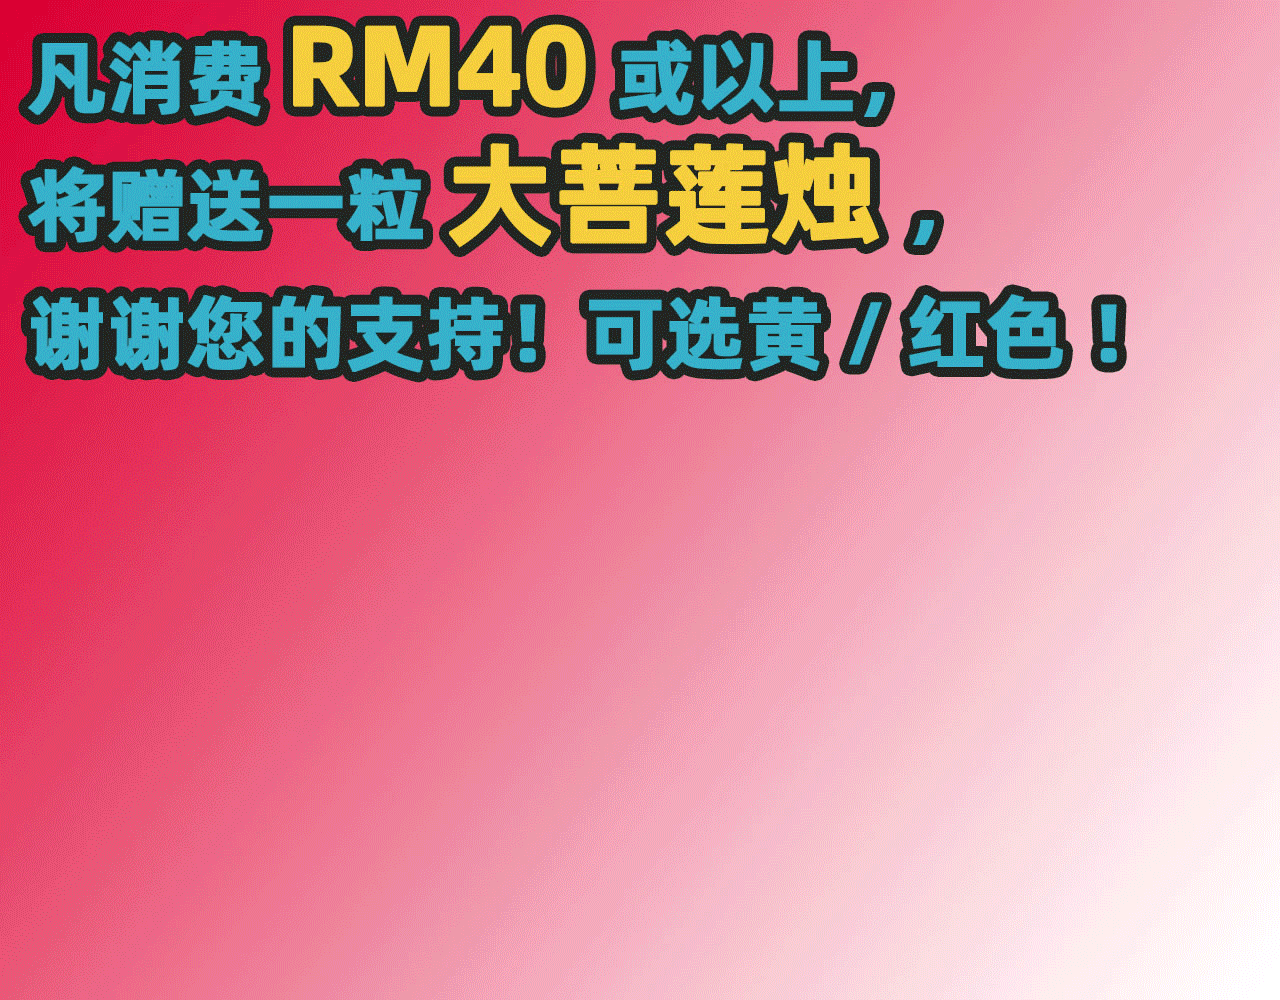 4u - 消费RM40或以上赠品